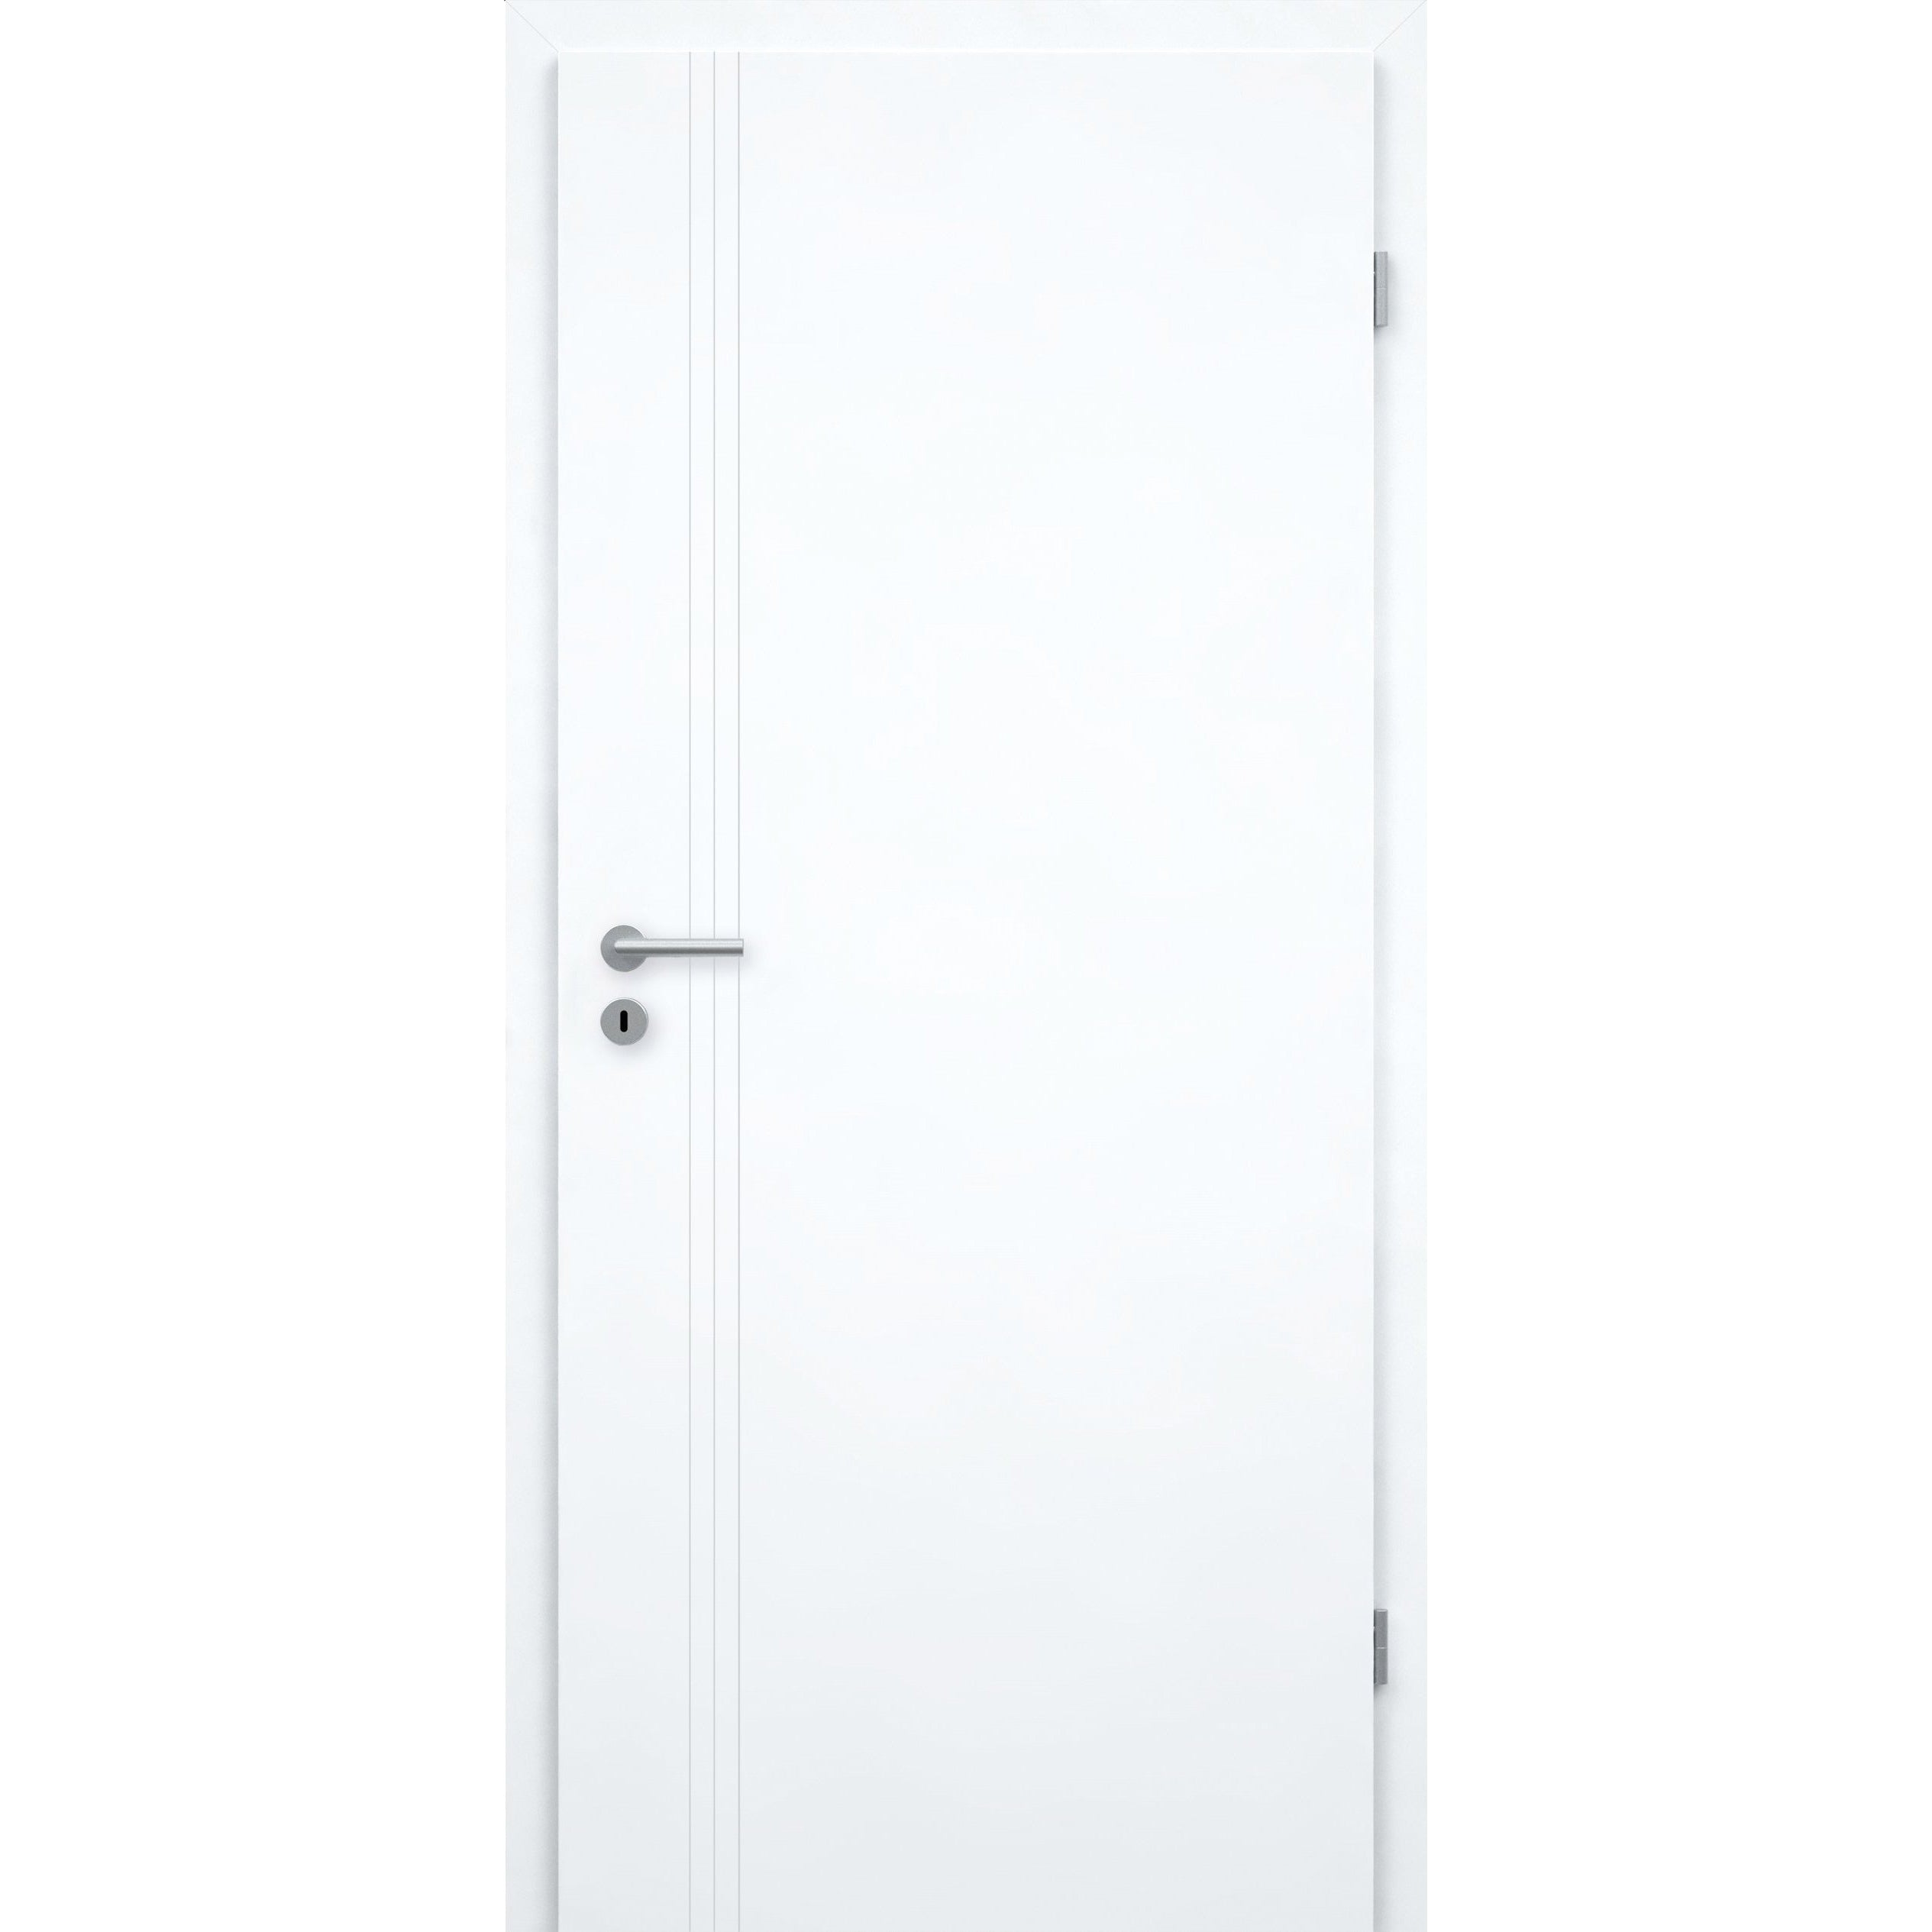 Zimmertür brillant-weiß 3 Rillen aufrecht Schlossseite Designkante - Modell Designtür VS33